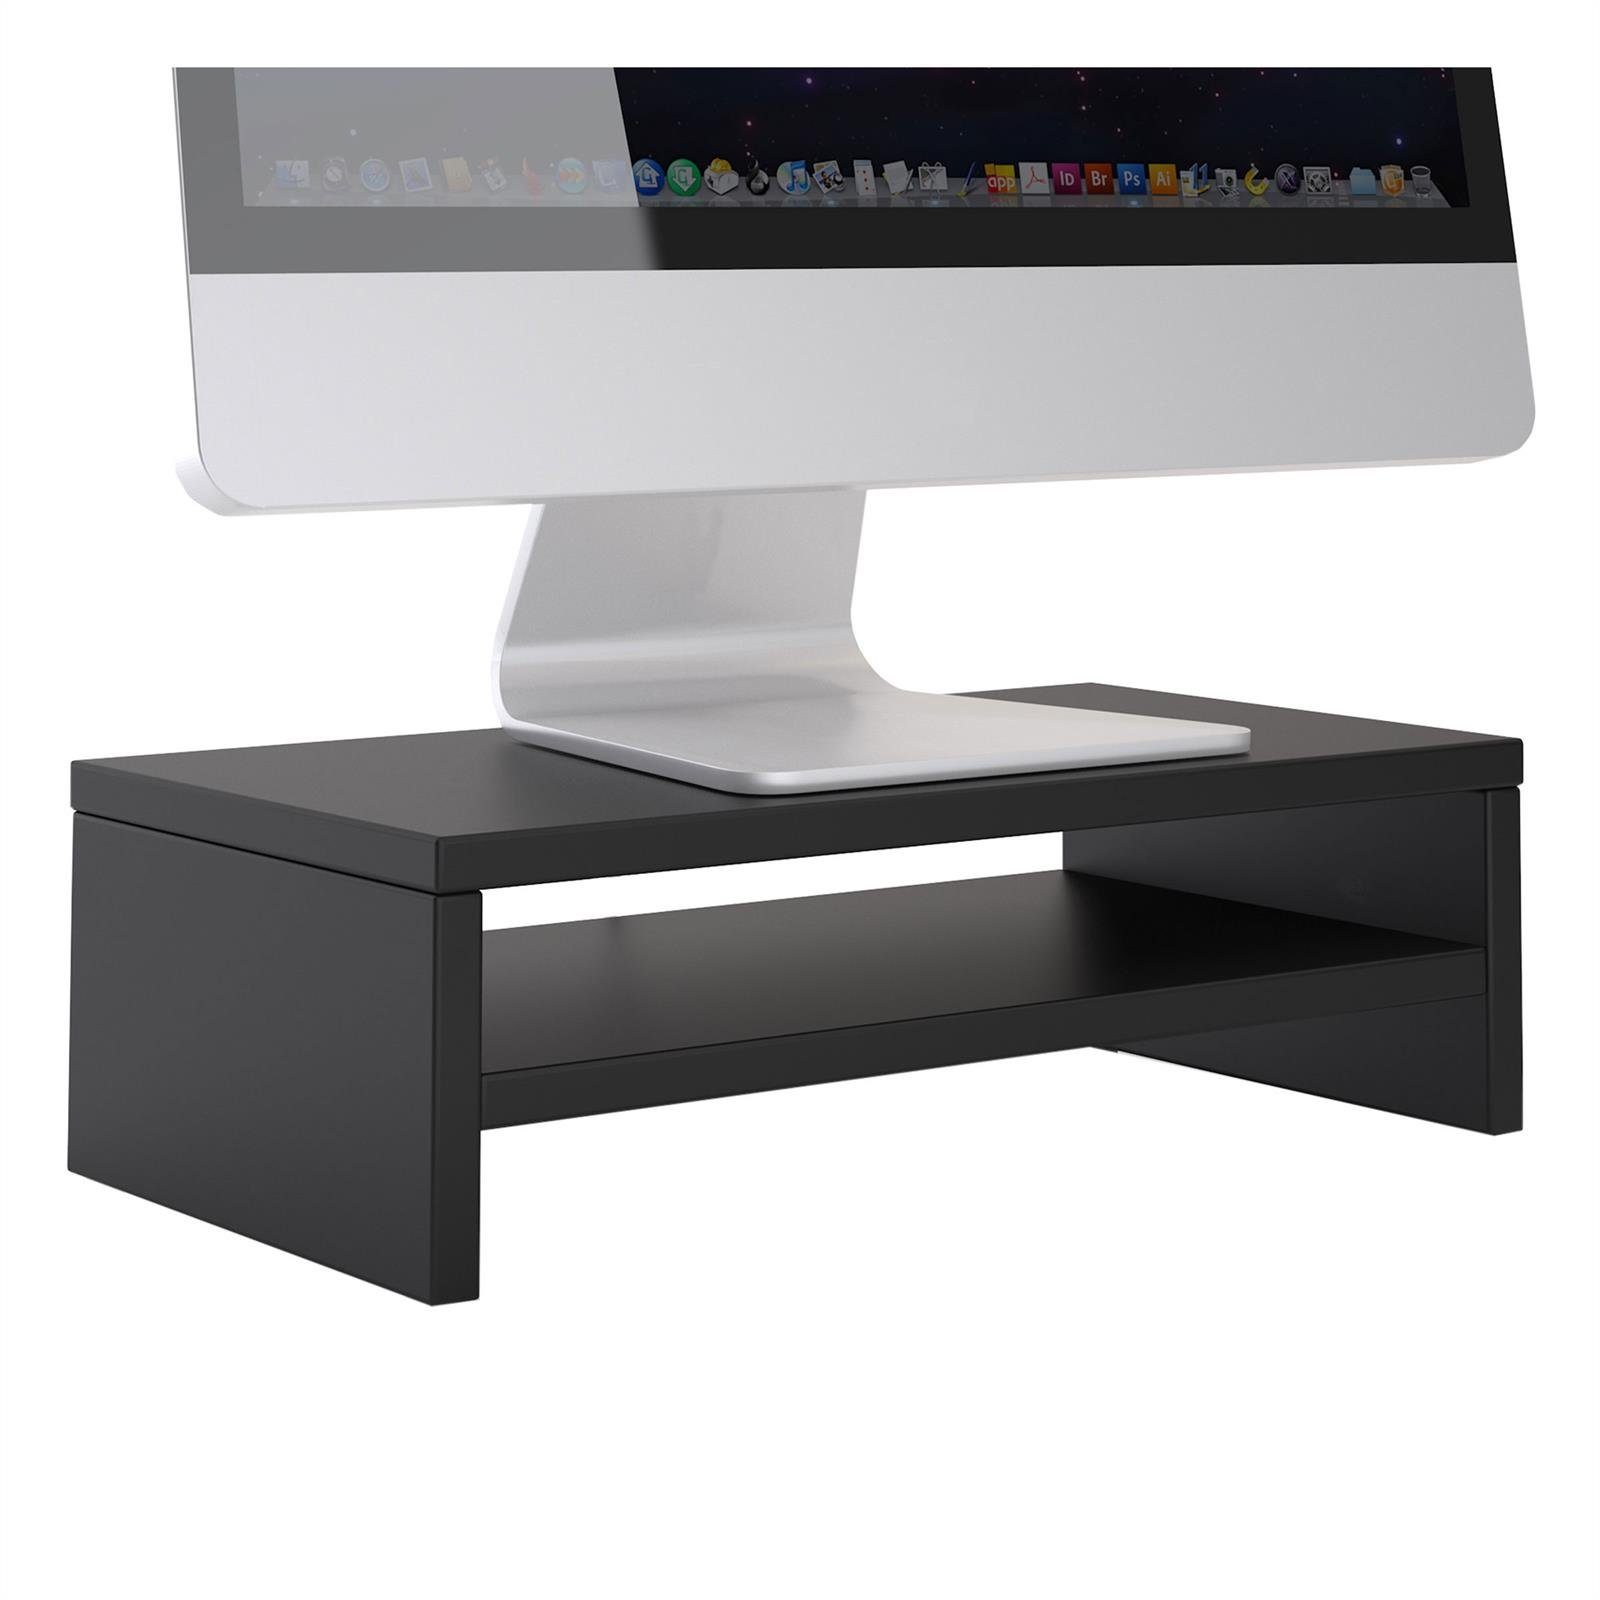 CARO-Möbel Schreibtischaufsatz SUBIDA, Bildschirmaufsatz Monitorständer Monitorerhöhung inkl. Ablagefach schwarz | Schrankaufsätze